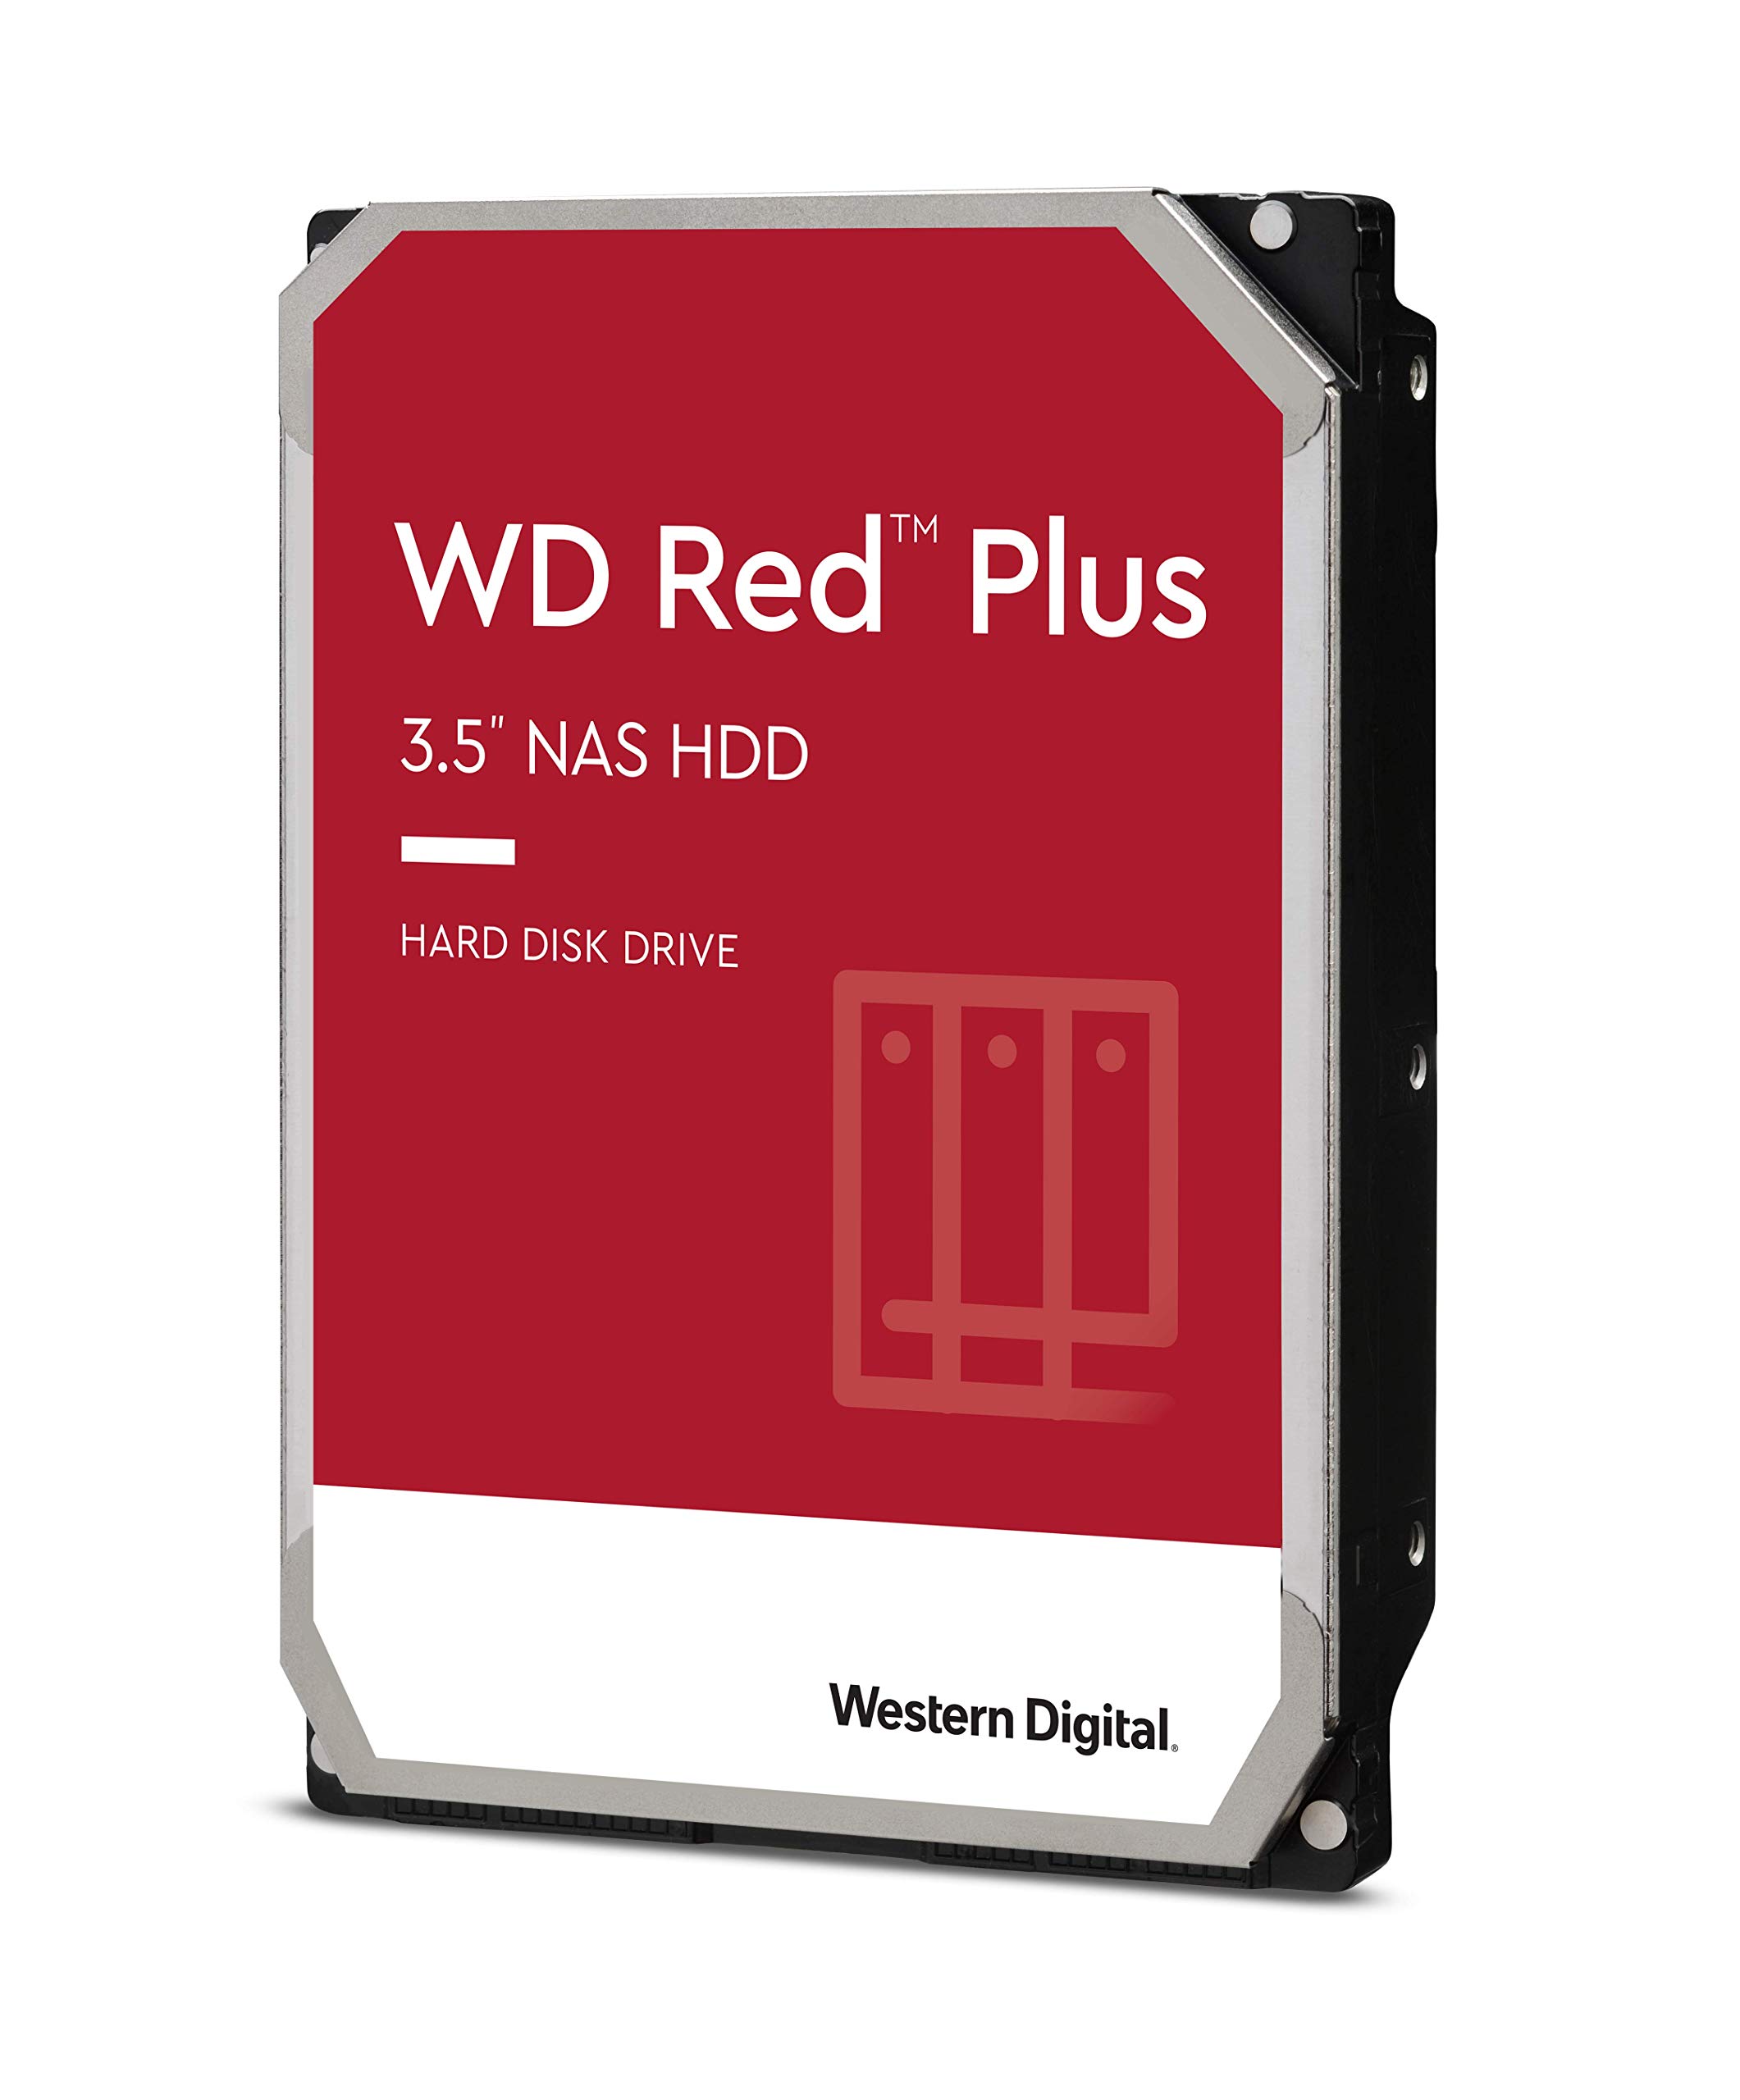 Western Digital 8TB WD Red Plus NAS Internal Hard Drive HDD - 7200 RPM, SATA 6 Gb/s, CMR, 256 MB Cache, 3.5